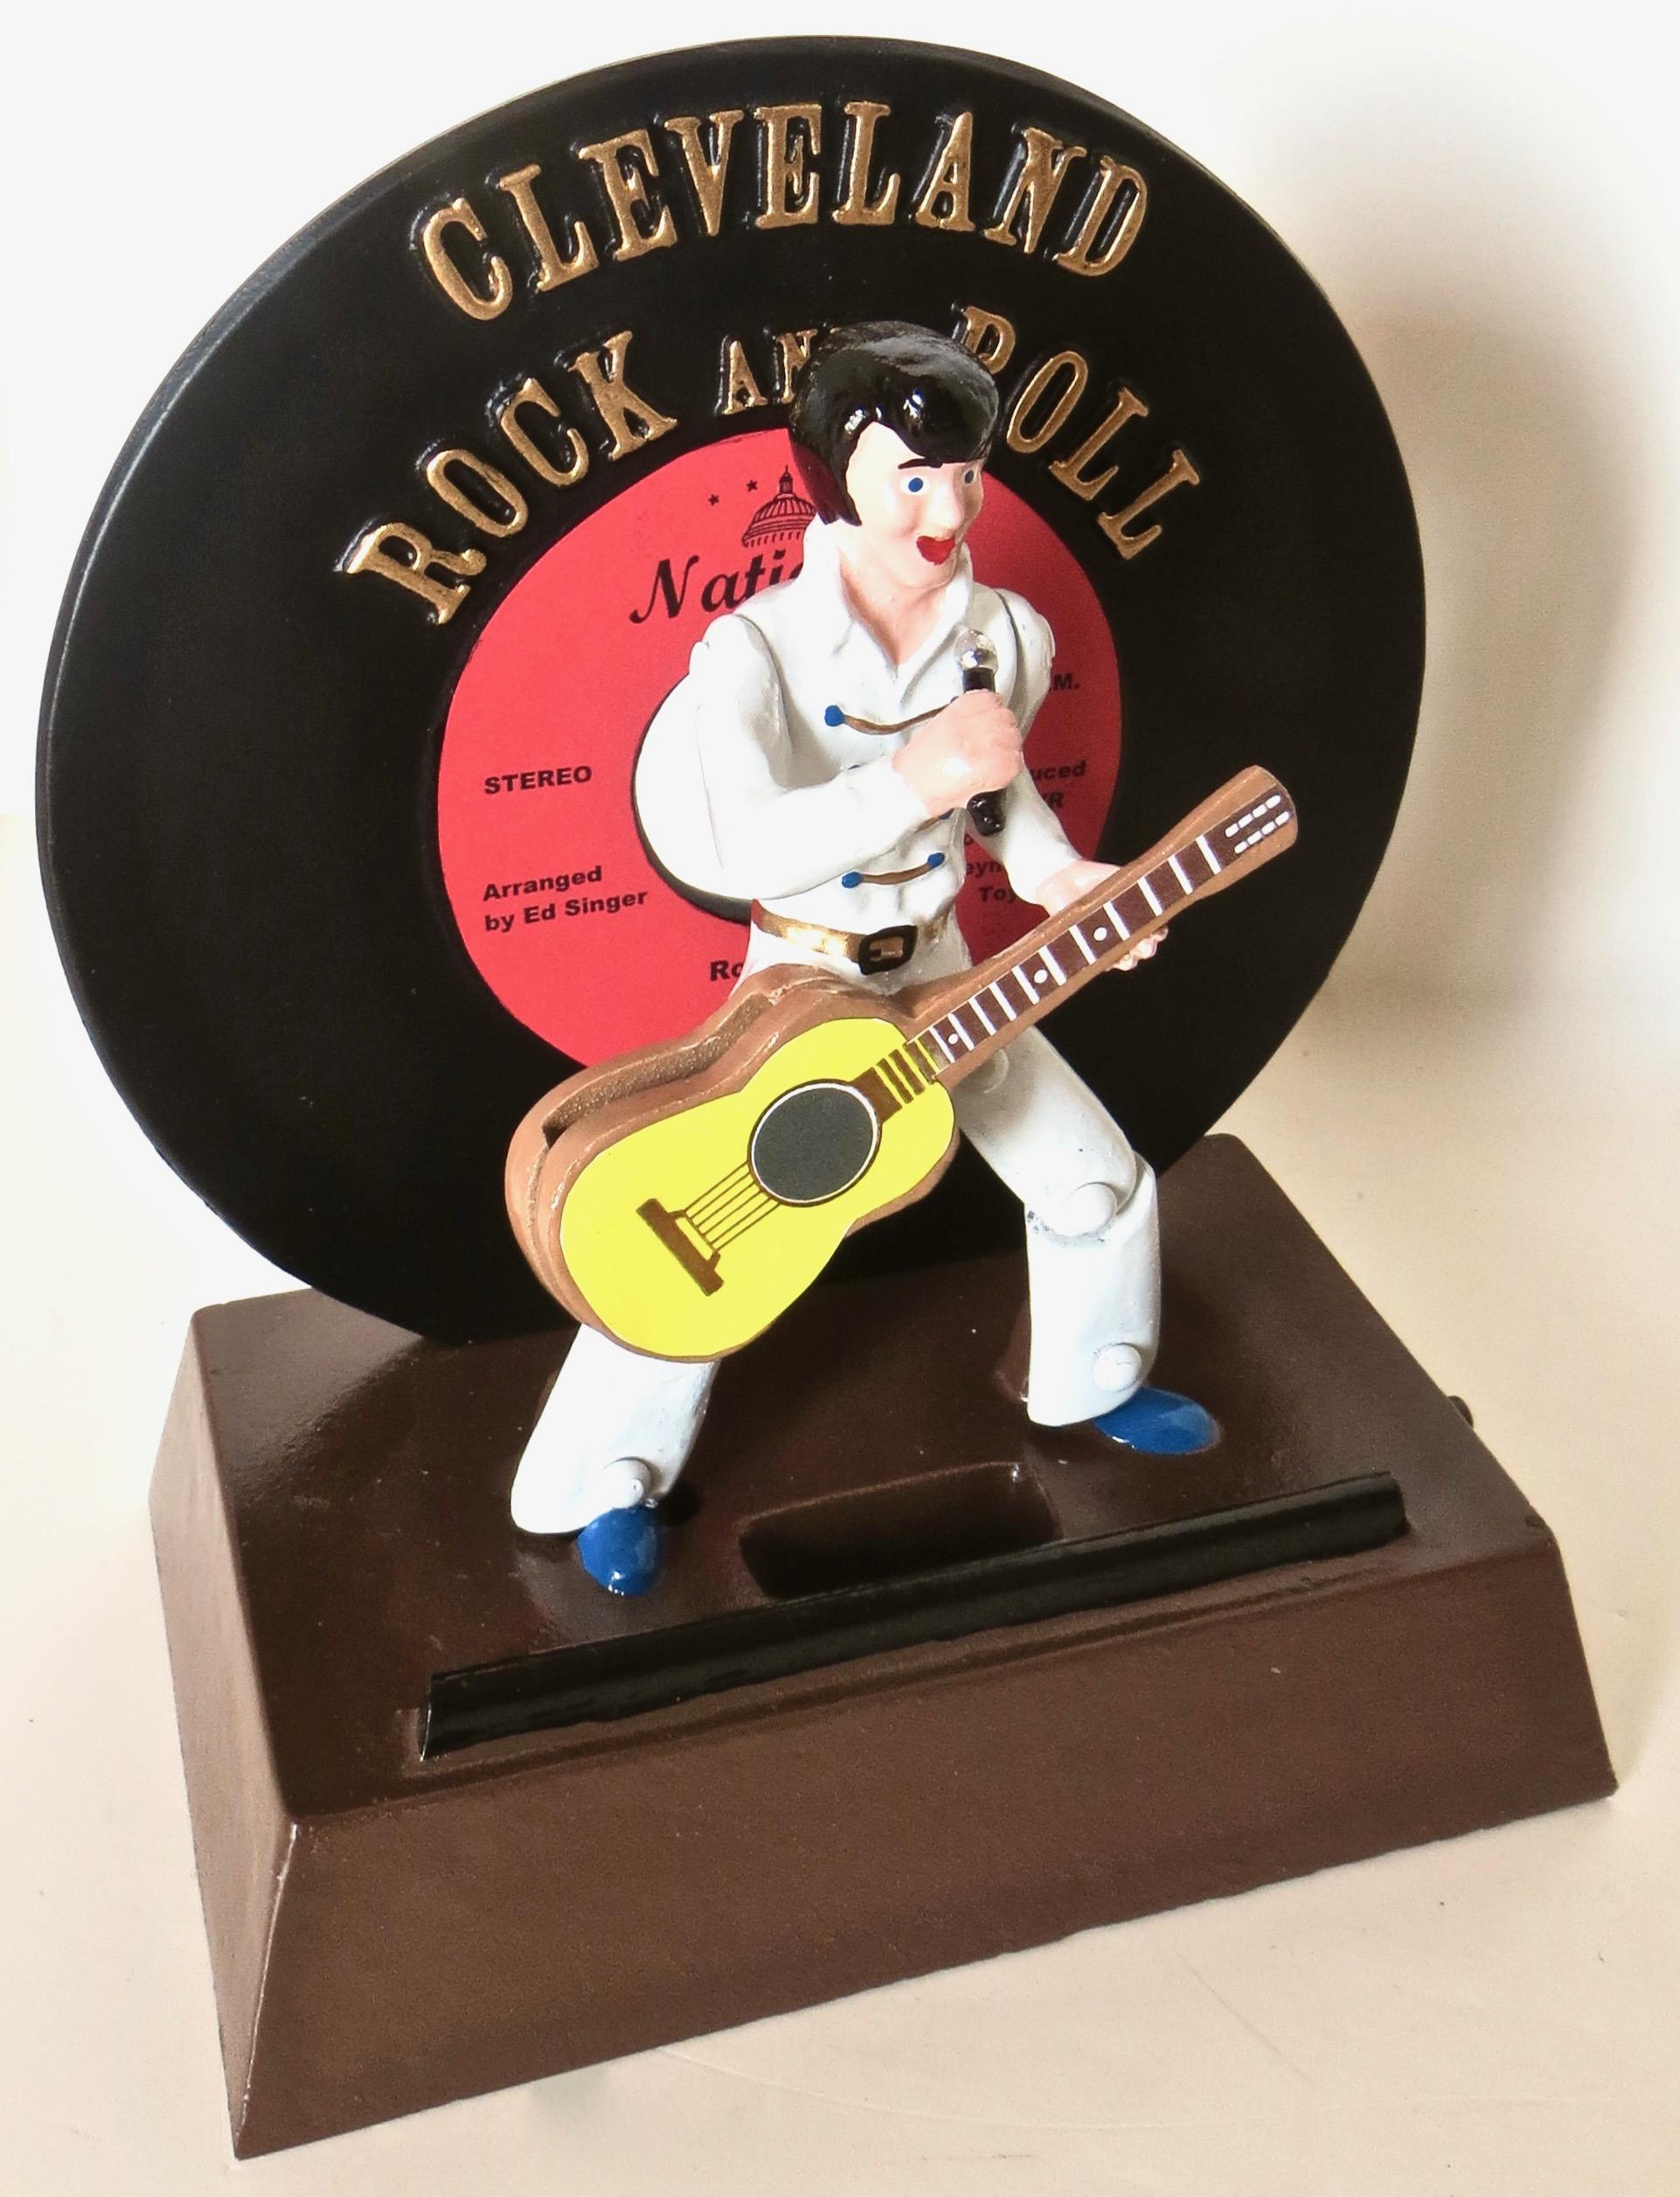 Diese mechanische Bank aus Aluminiumguss wurde zur Erinnerung an die Rock and Roll Hall of Fame in Cleveland, Ohio, hergestellt. Sie zeigt Elvis Presley in der für ihn typischen Galakleidung mit weißem Anzug, Mikrofon in der Hand und Gitarre, die